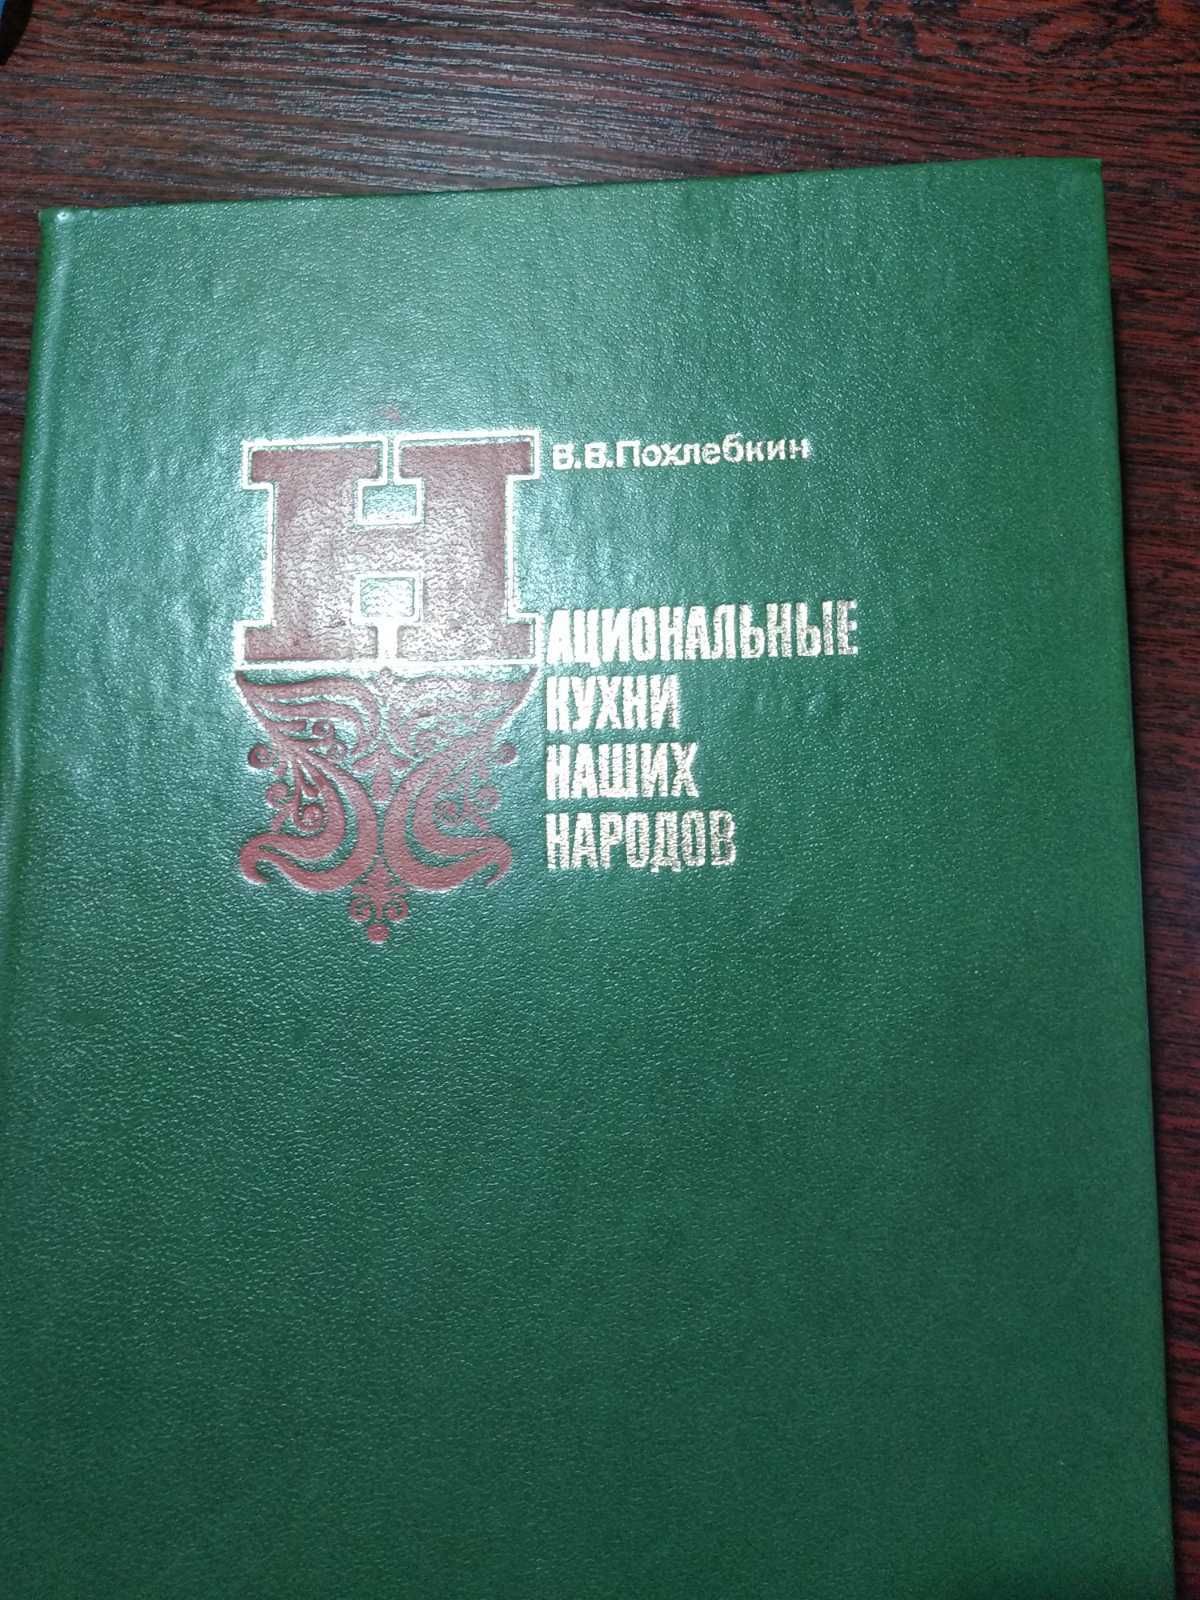 Книга Похлебкин "Национальные кухни наших народов" 1980